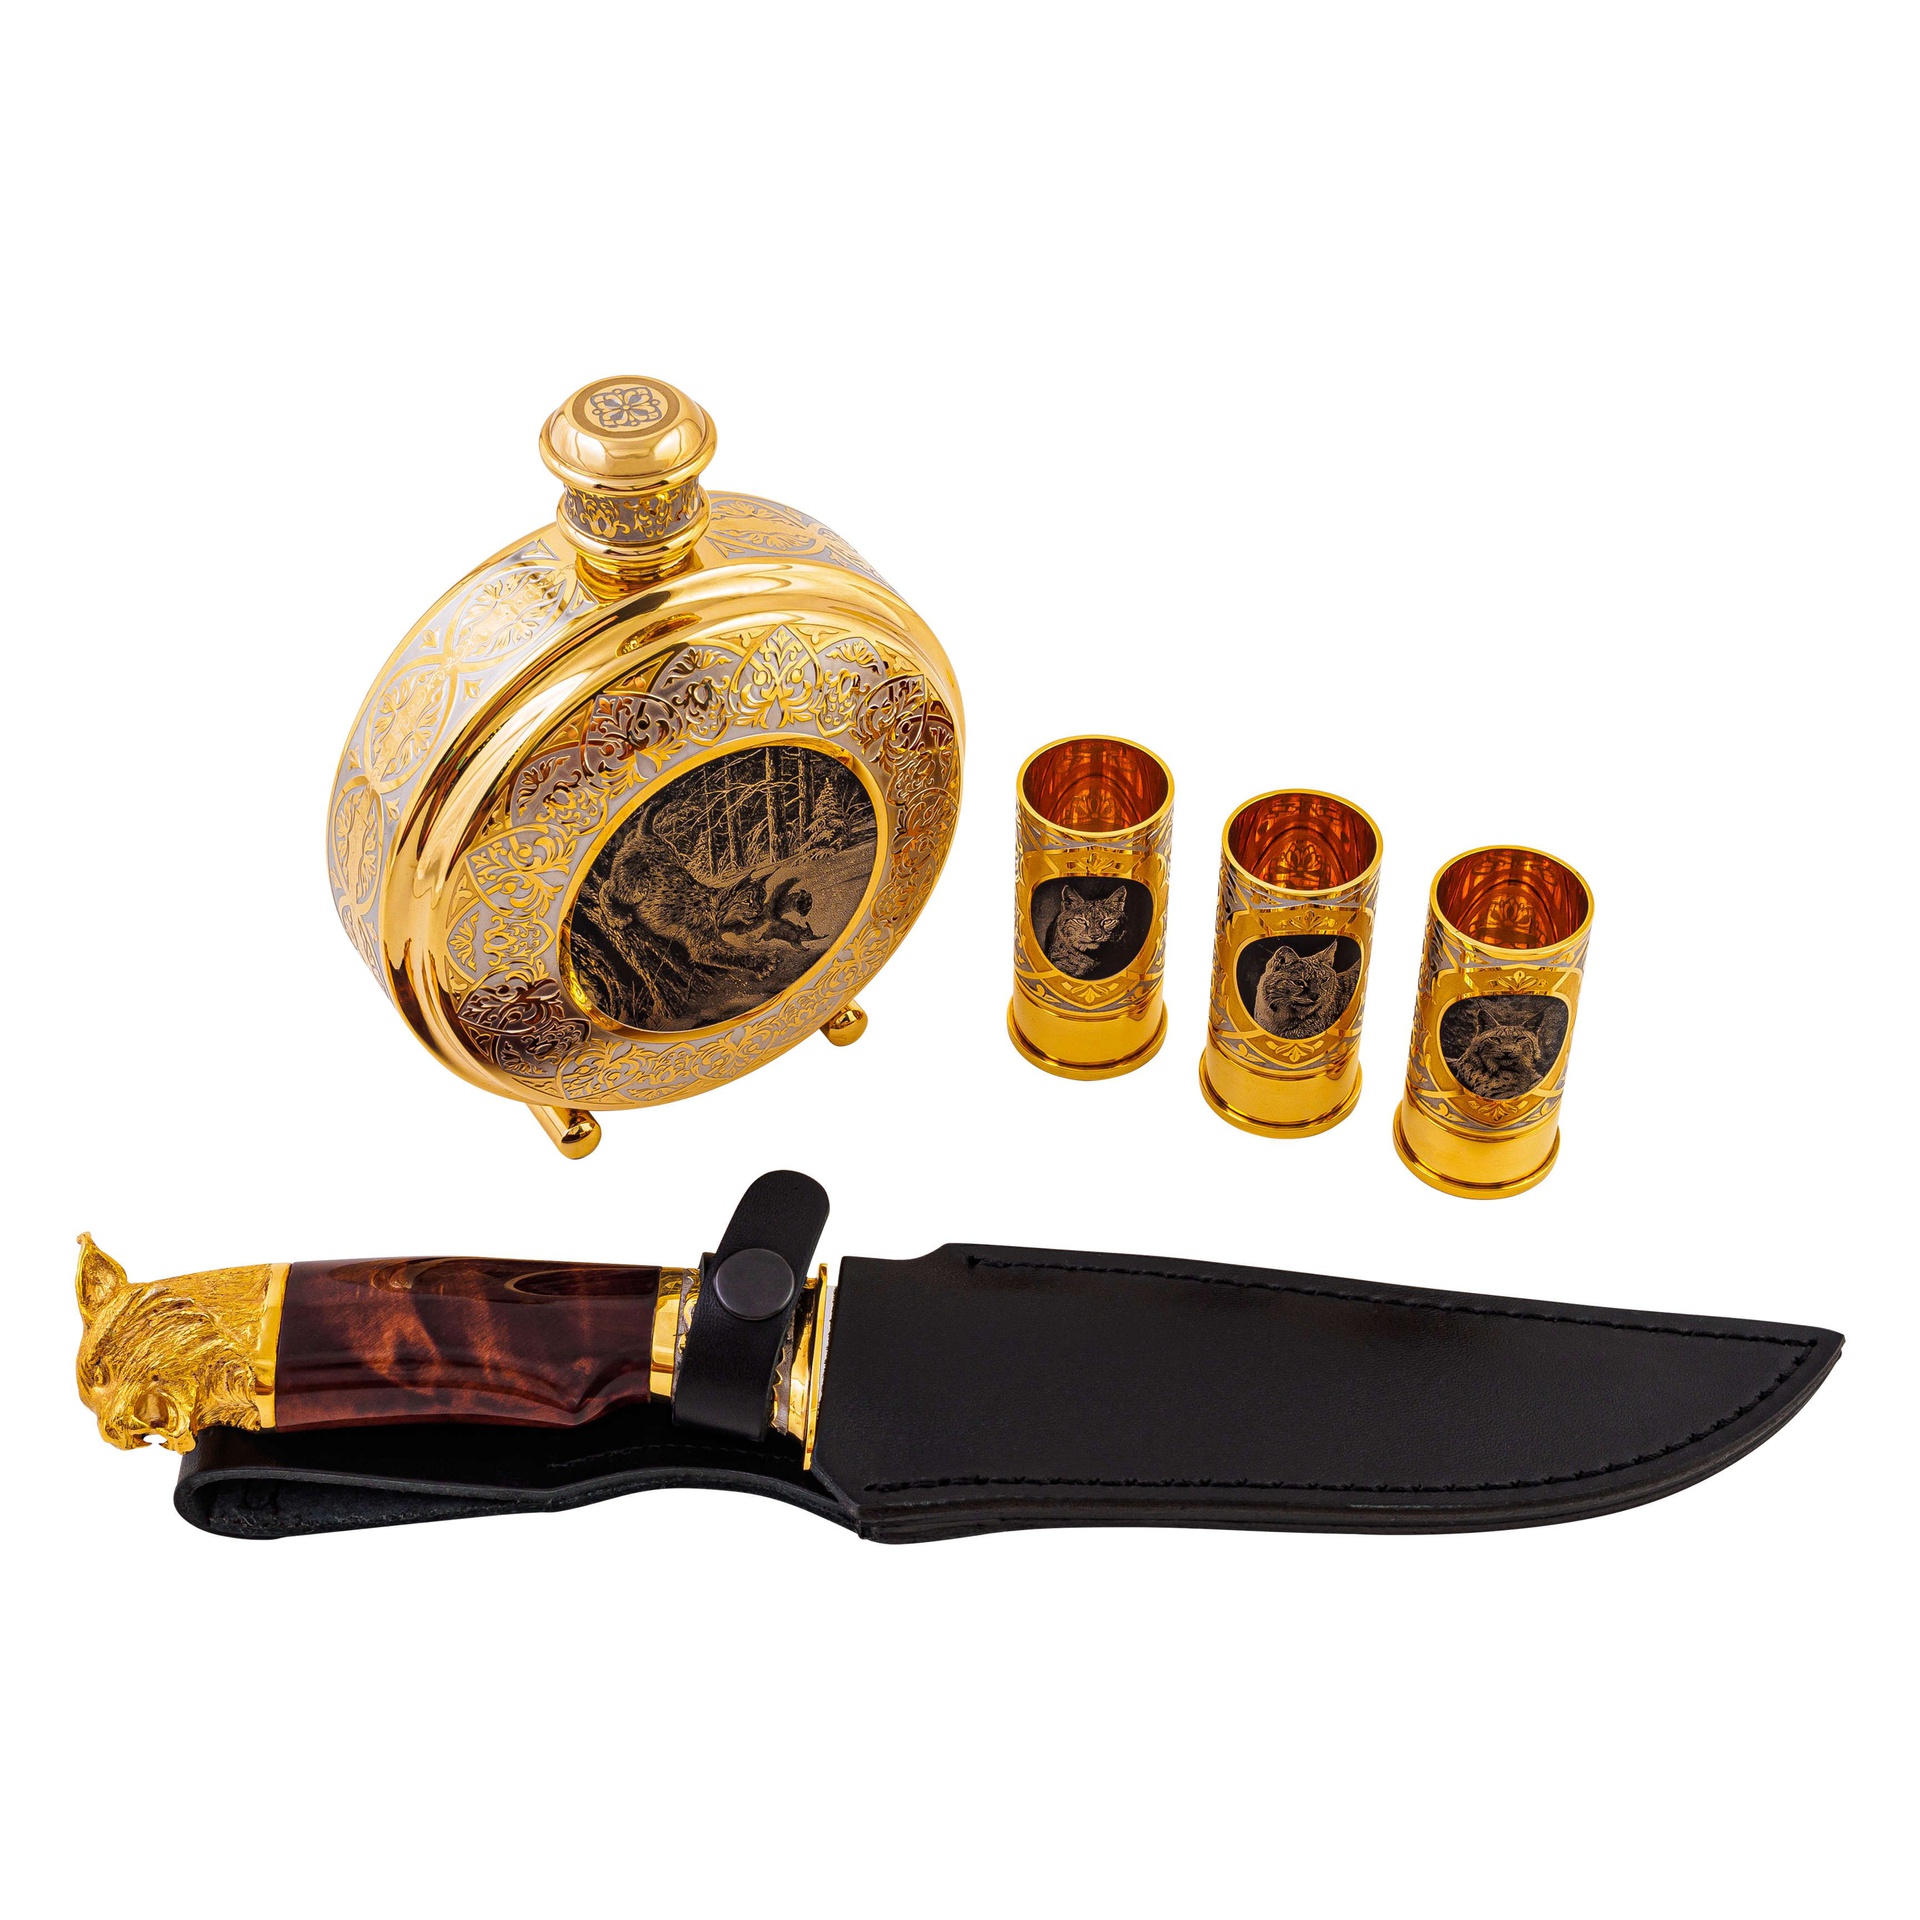 Охотничий набор "Рысь" (фляжка, стопки, нож ЭИ-107) с Златоустовской гравюрой на стали по 59900 р.